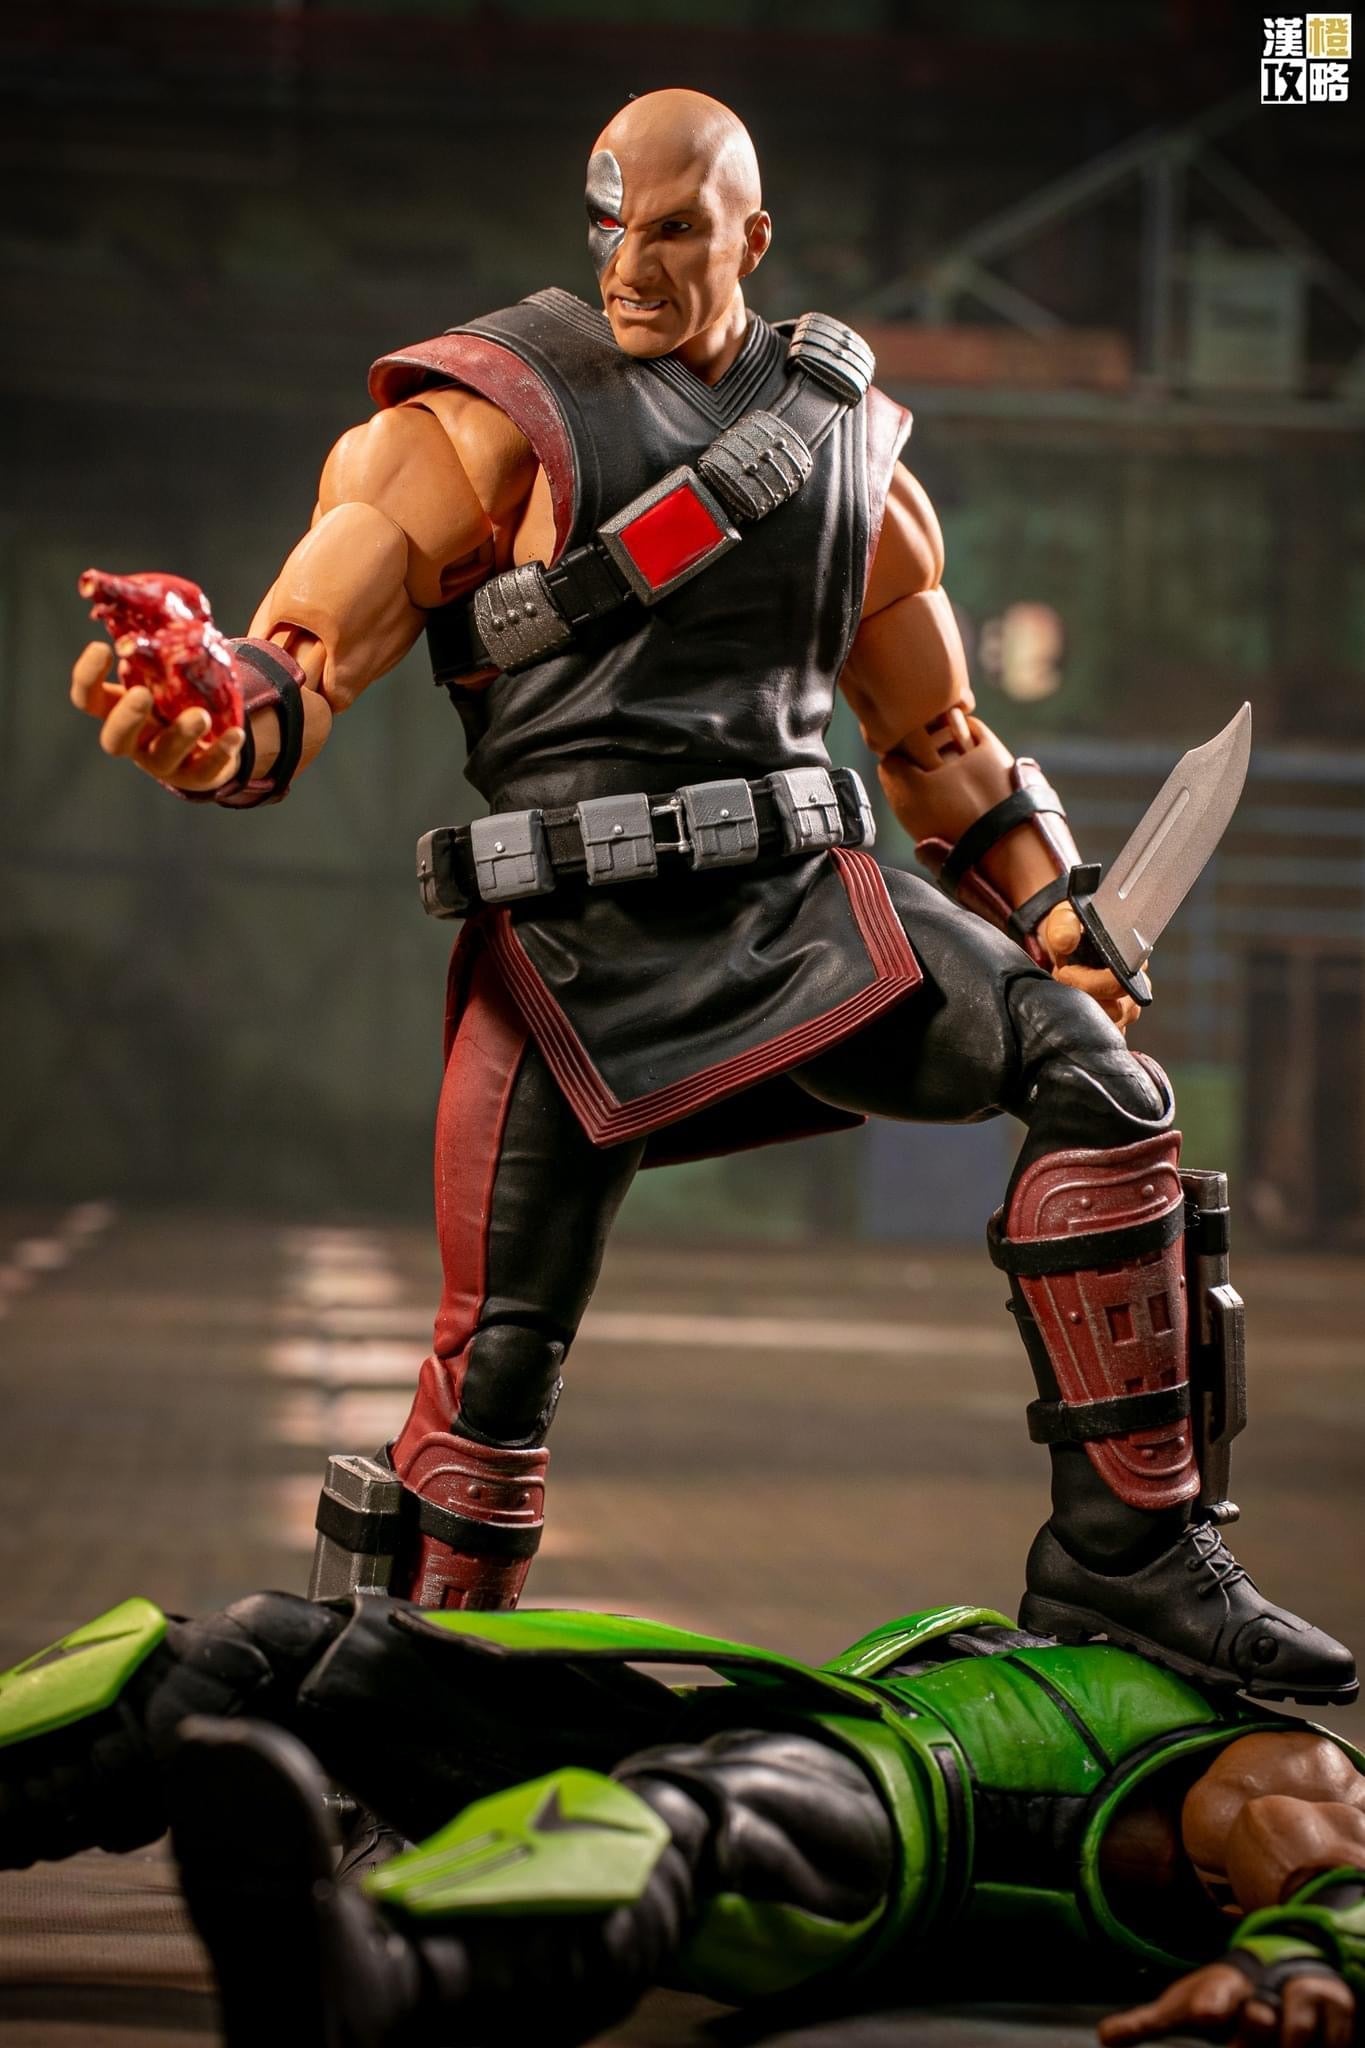 [EN STOCK] Figura Kano - Mortal Kombat marca Storm Collectibles escala 1/12